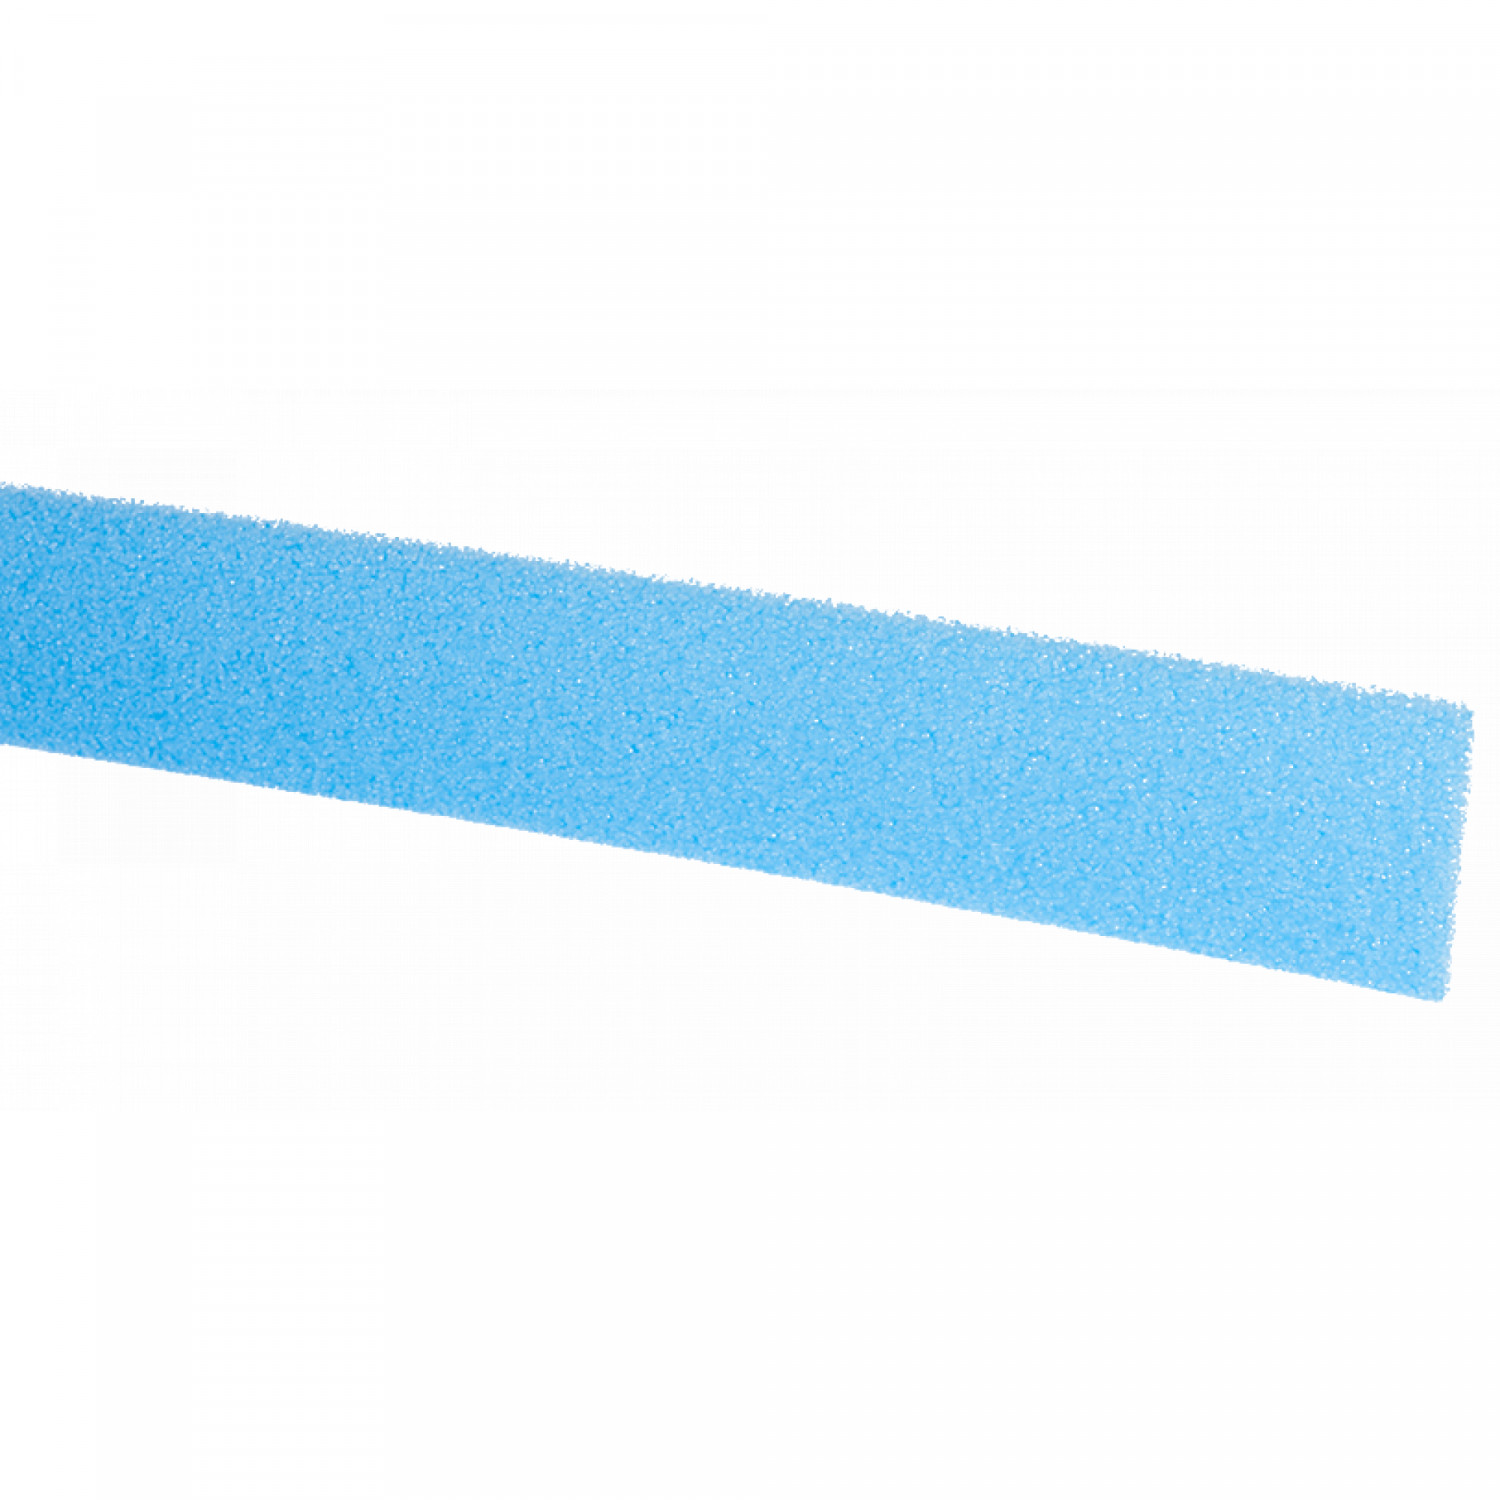 IT PE-Dehnstreifen 8/100 blau, 2 m, 50 m/VPE